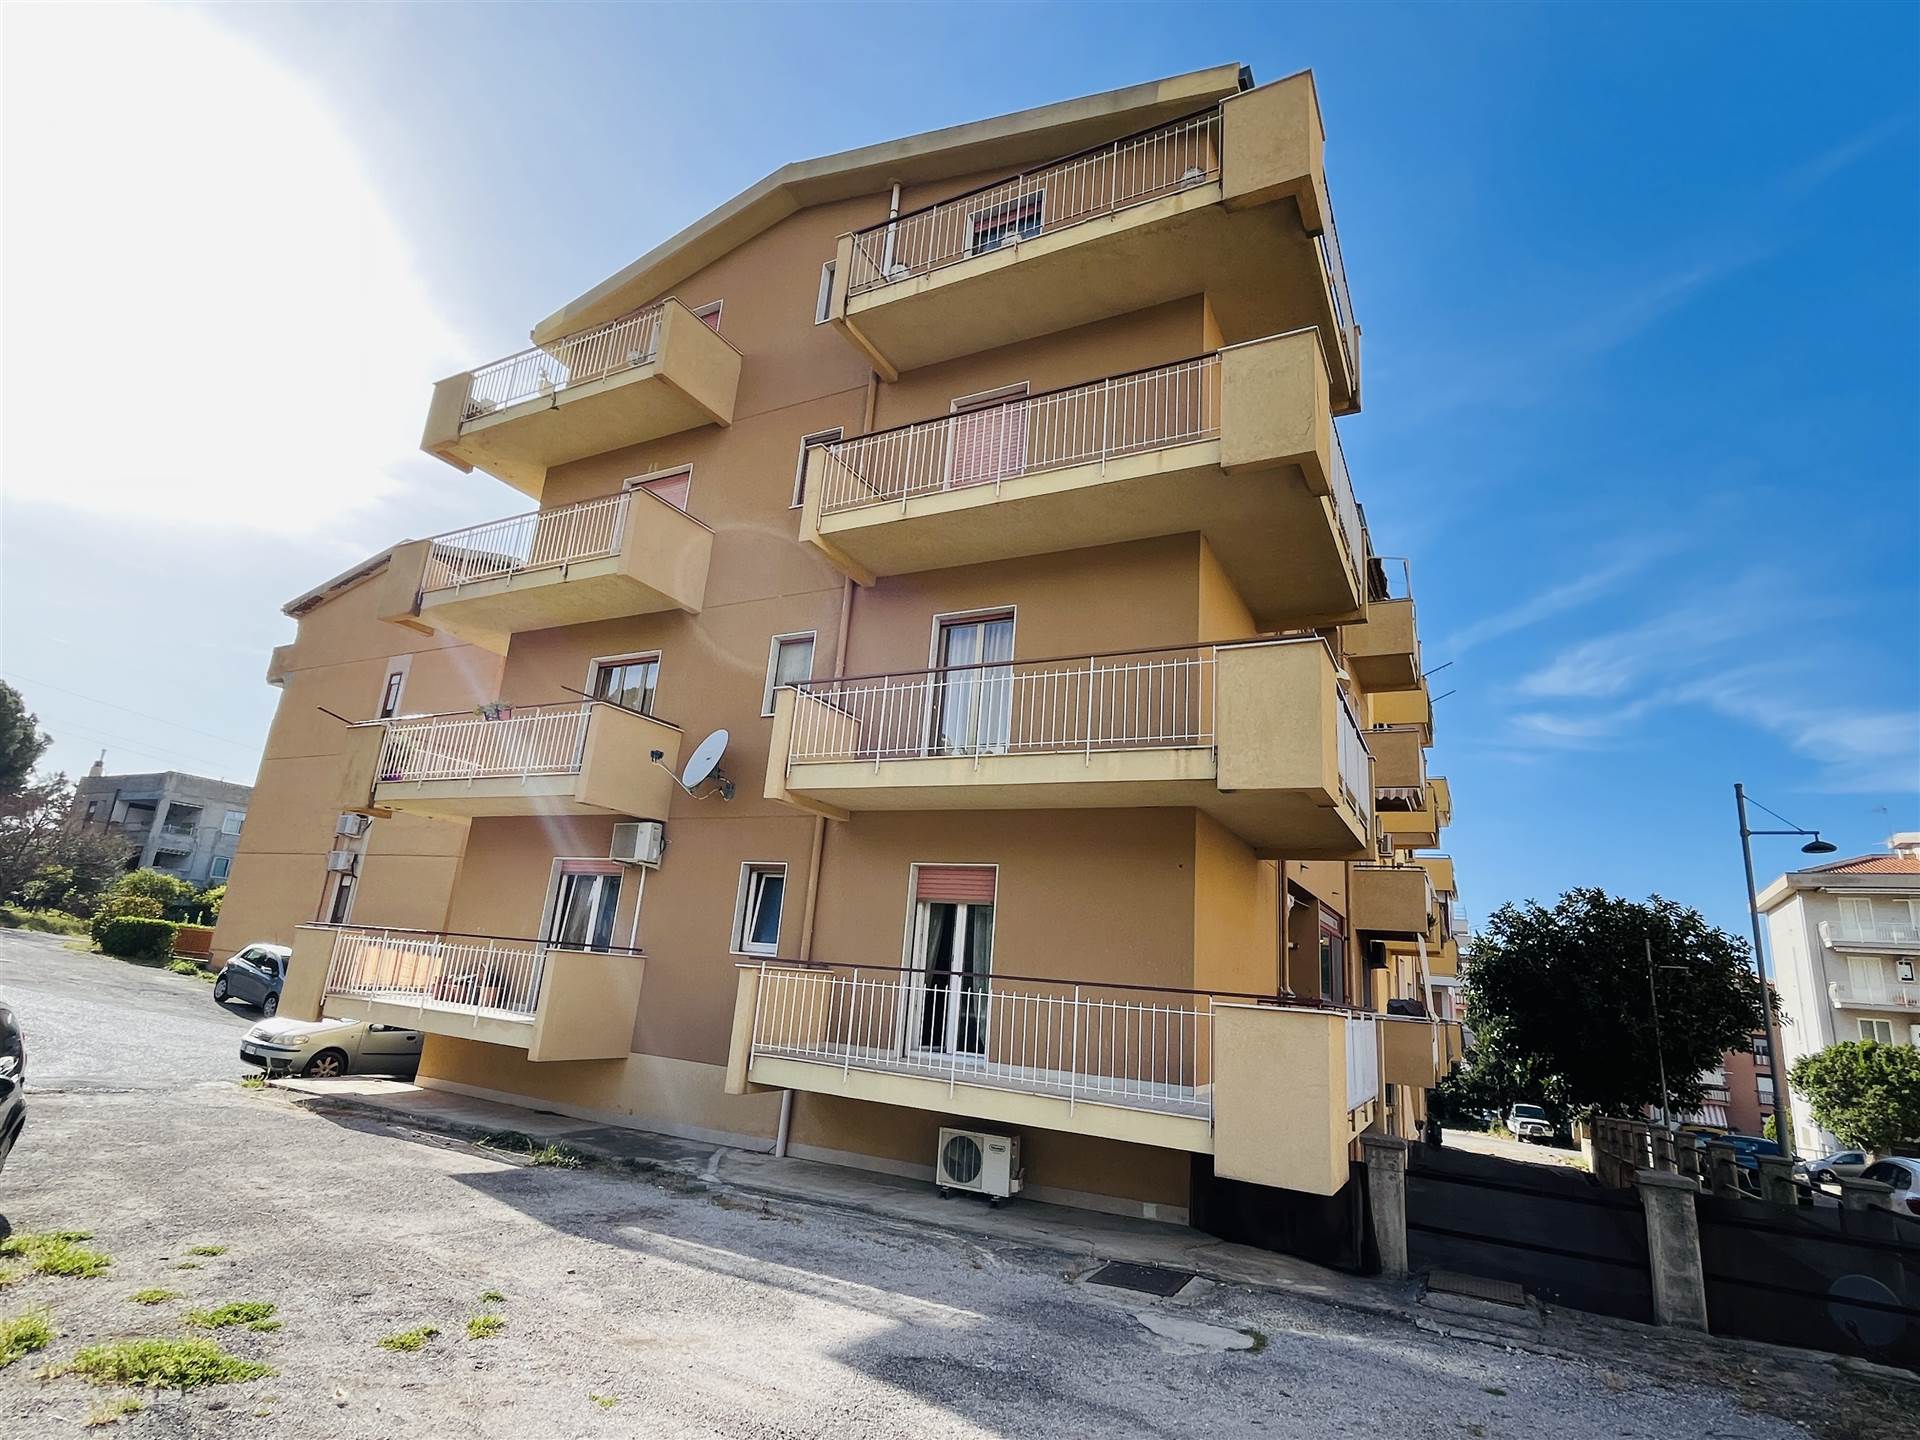 Appartamento in vendita a Campofelice di Roccella, 6 locali, prezzo € 115.000 | PortaleAgenzieImmobiliari.it